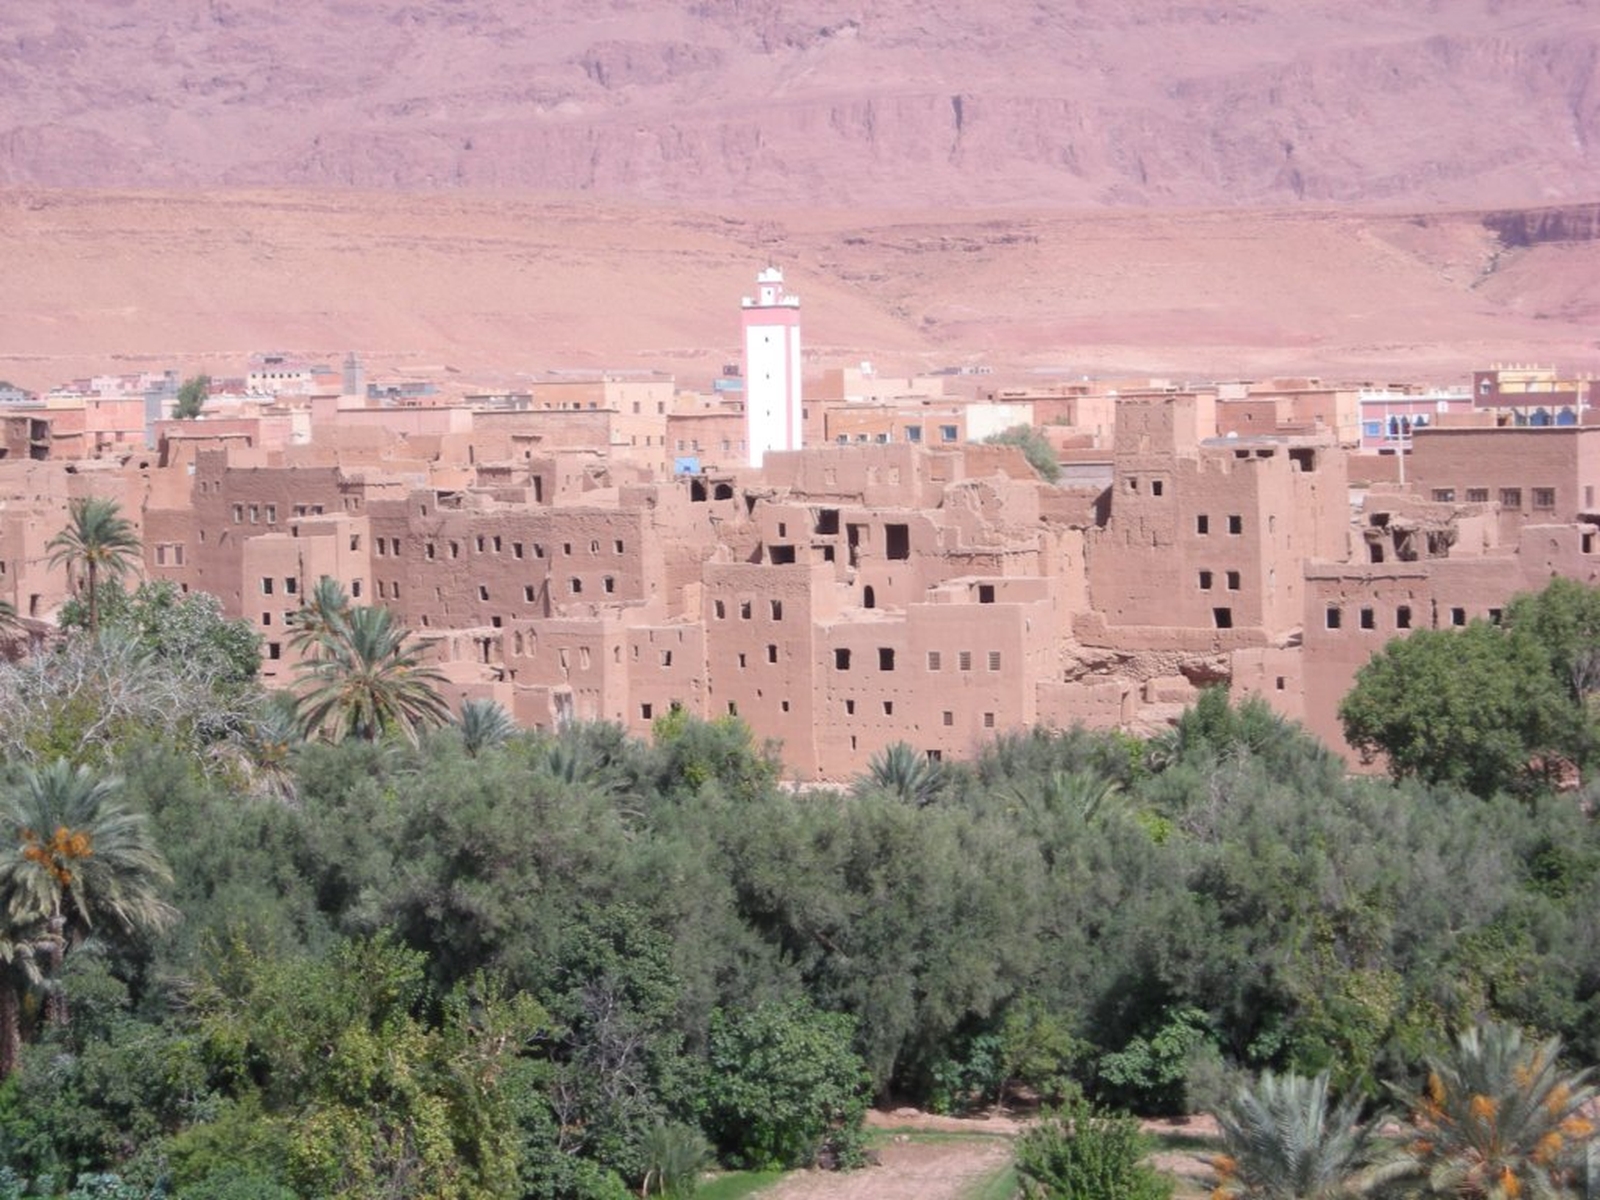 296 - Verso Ouarzazate